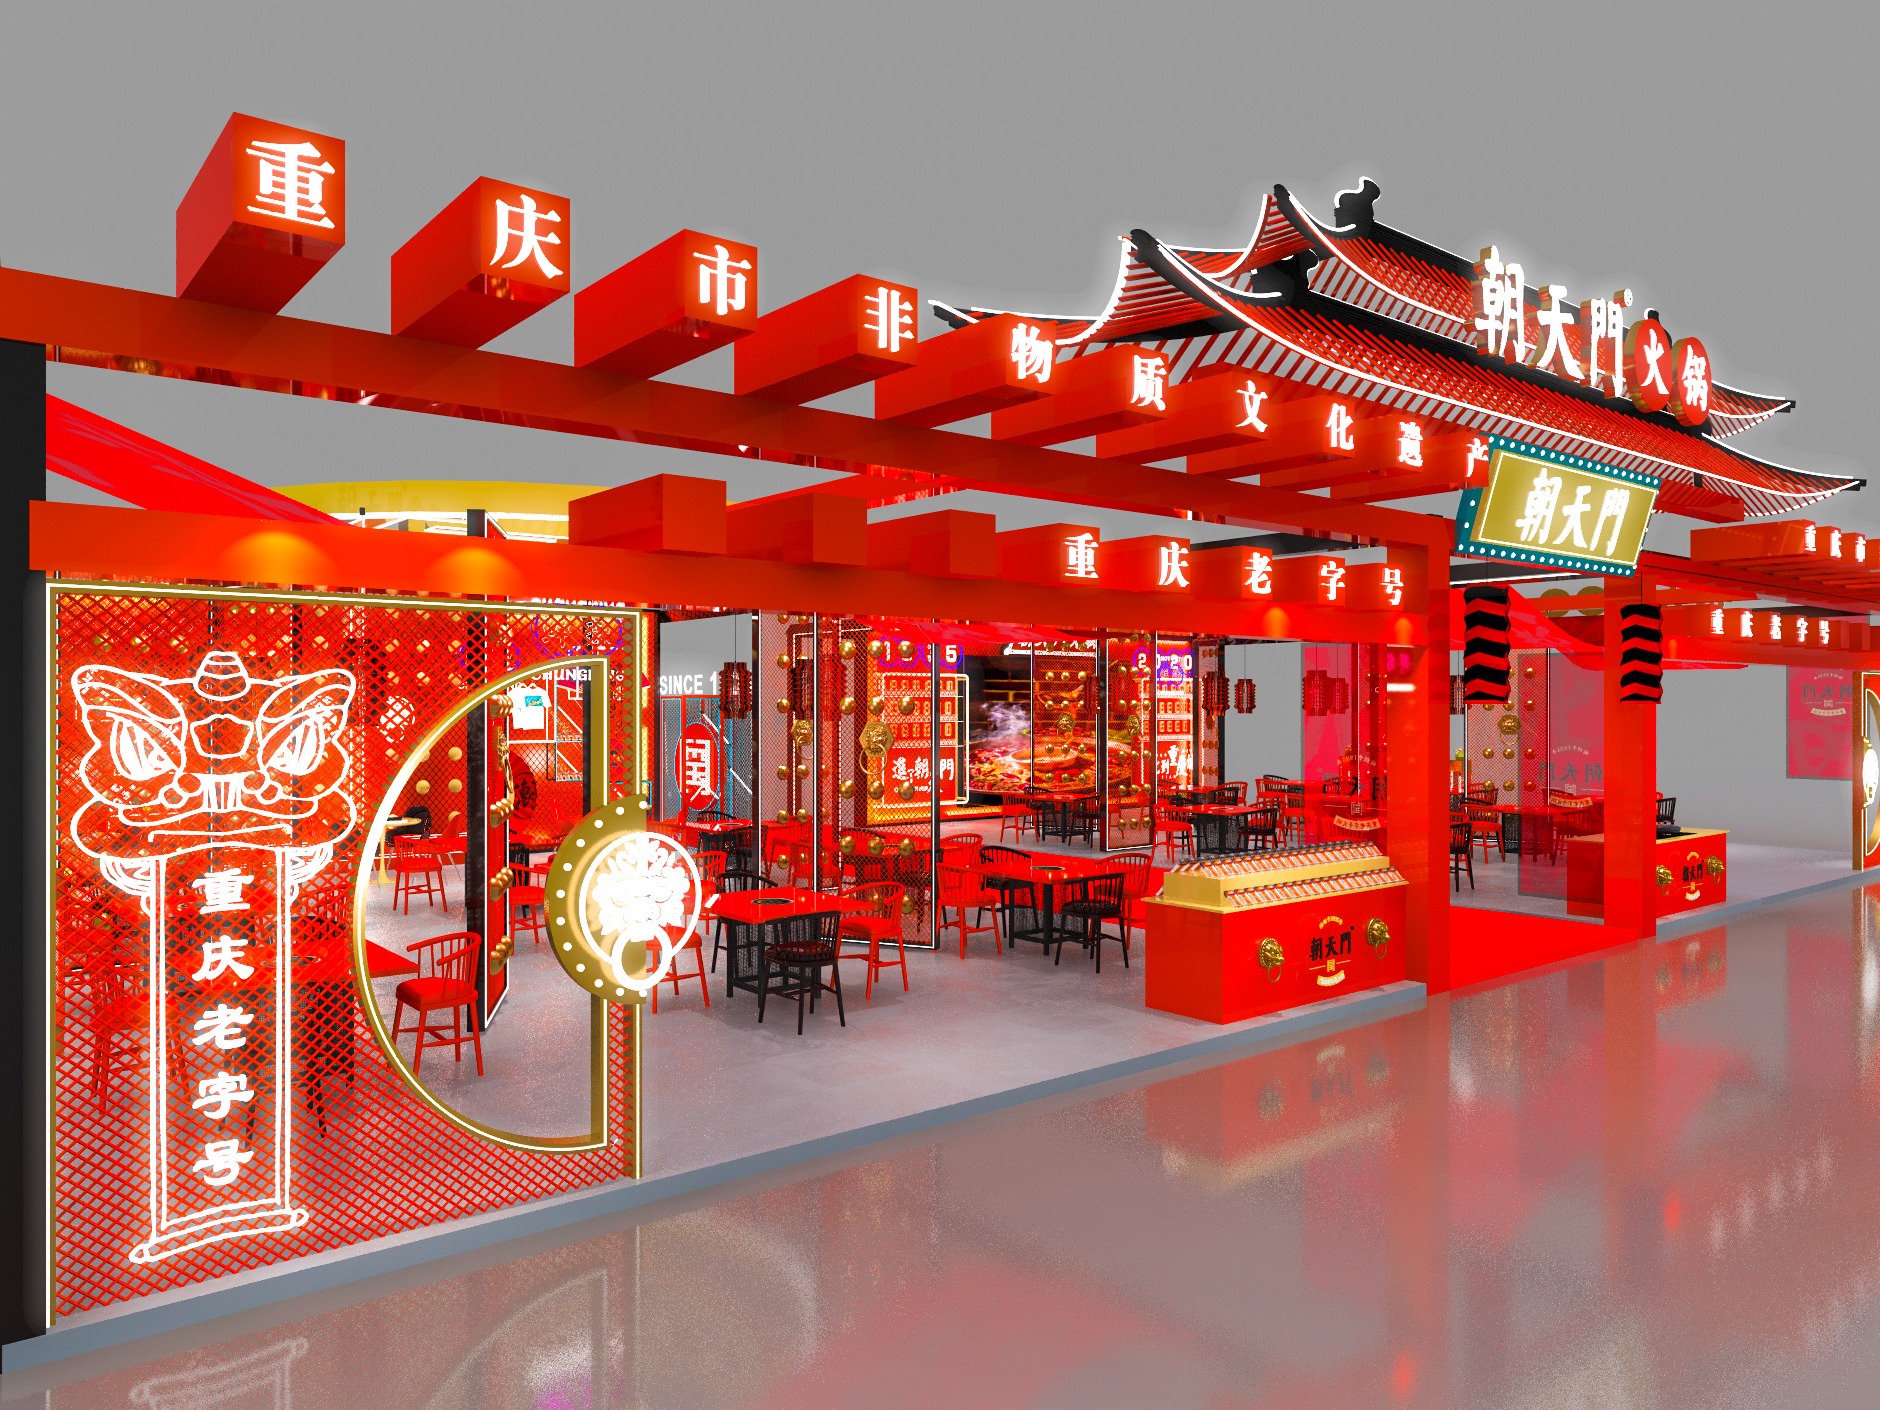 重庆火锅店设计·术御餐饮空间设计 - 重庆术御室内设计有限公司